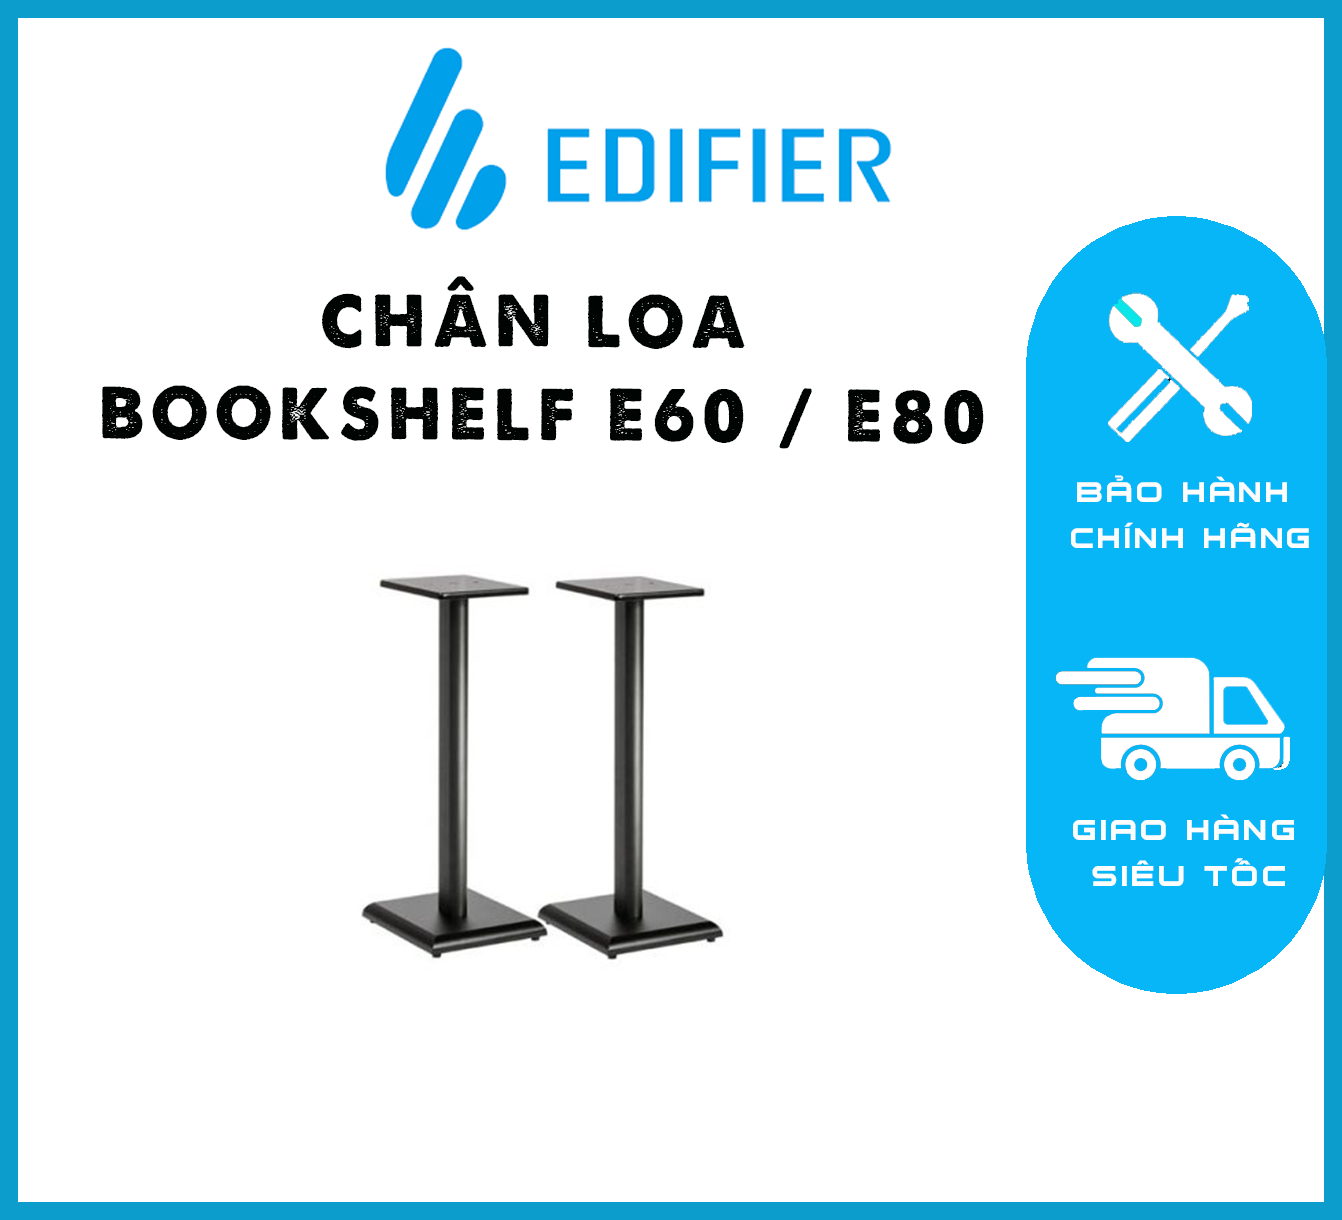 Chân loa Bookshelf E60 / E80